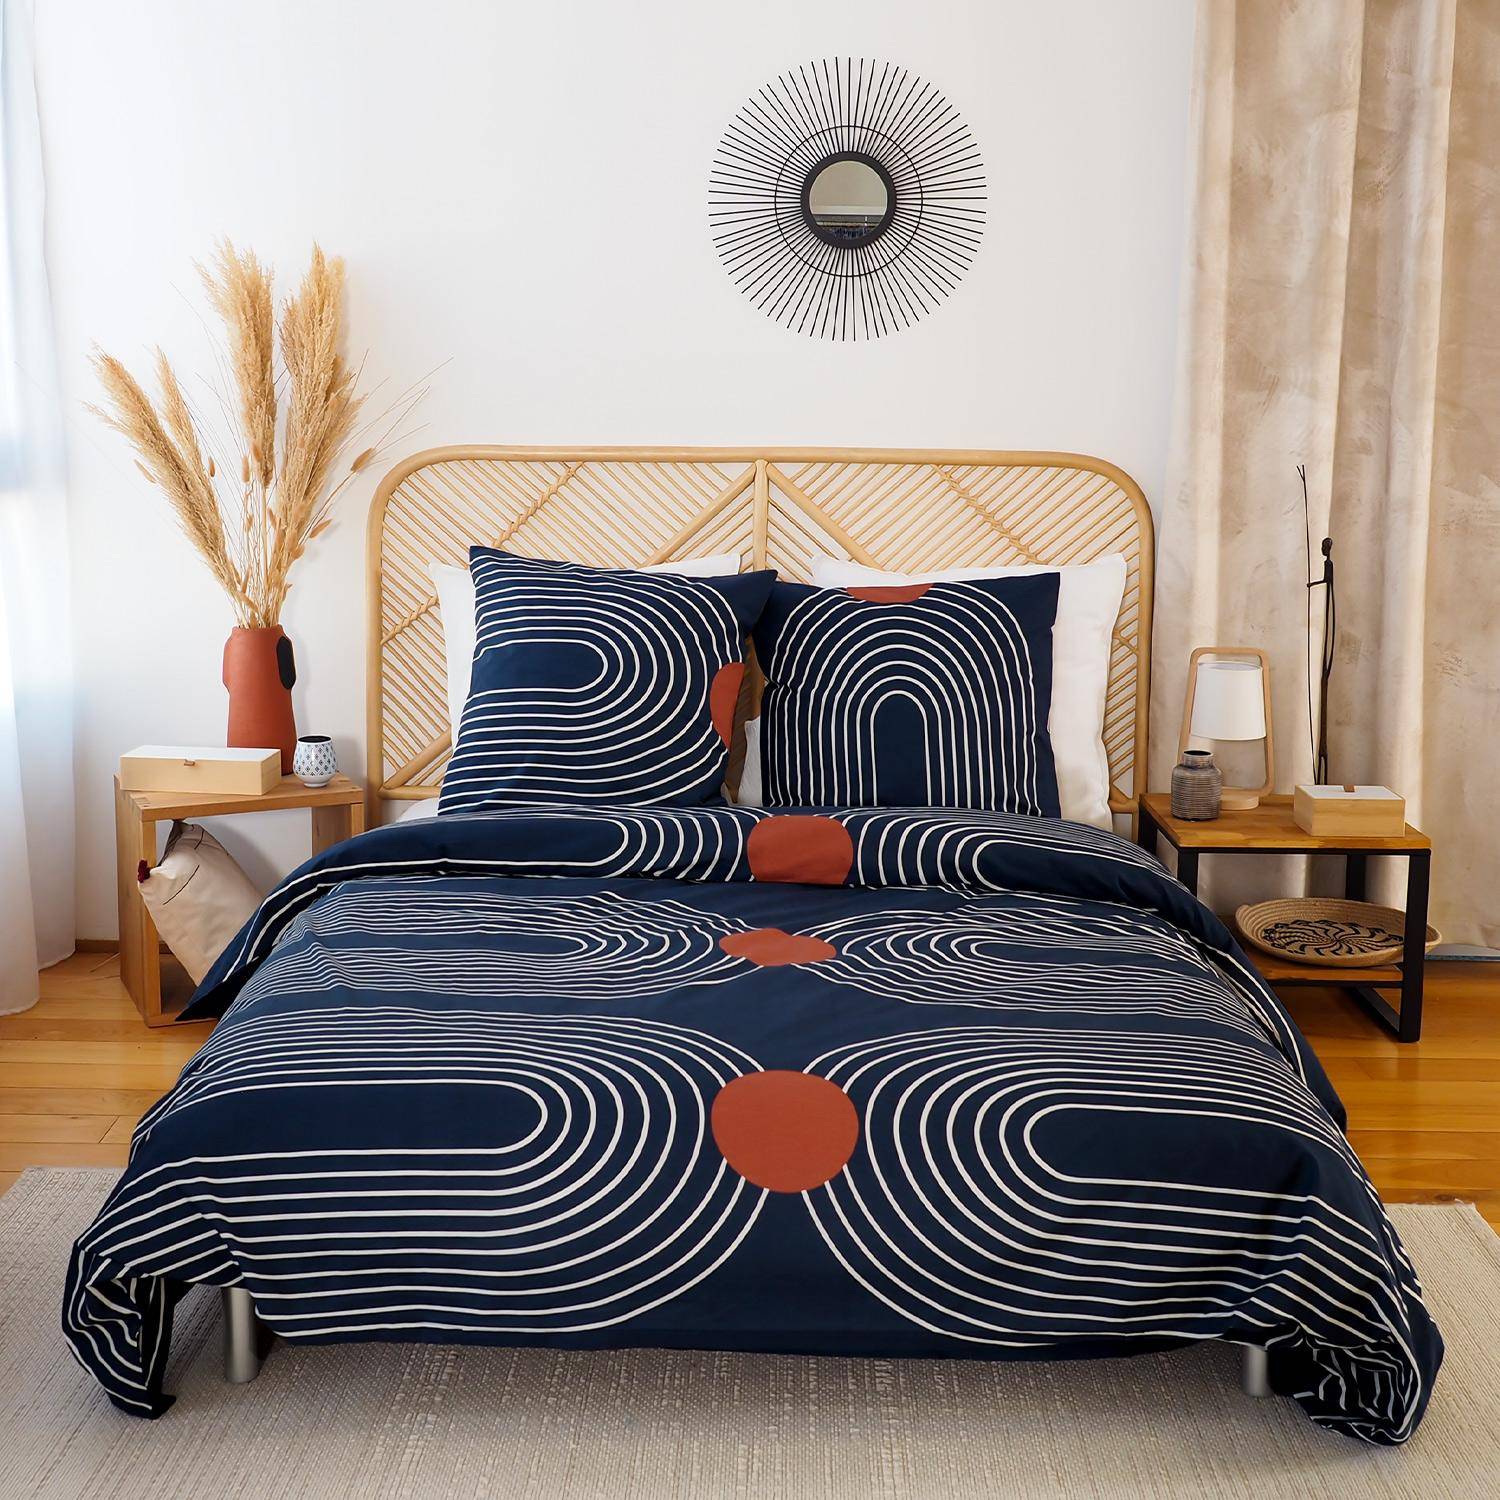 Bettwäsche 240x220 cm bedruckt mit Kurvenmotiv, aus weicher Baumwolle, 1 Bettbezug + 2 Kissenbezüge,sweeek,Photo1